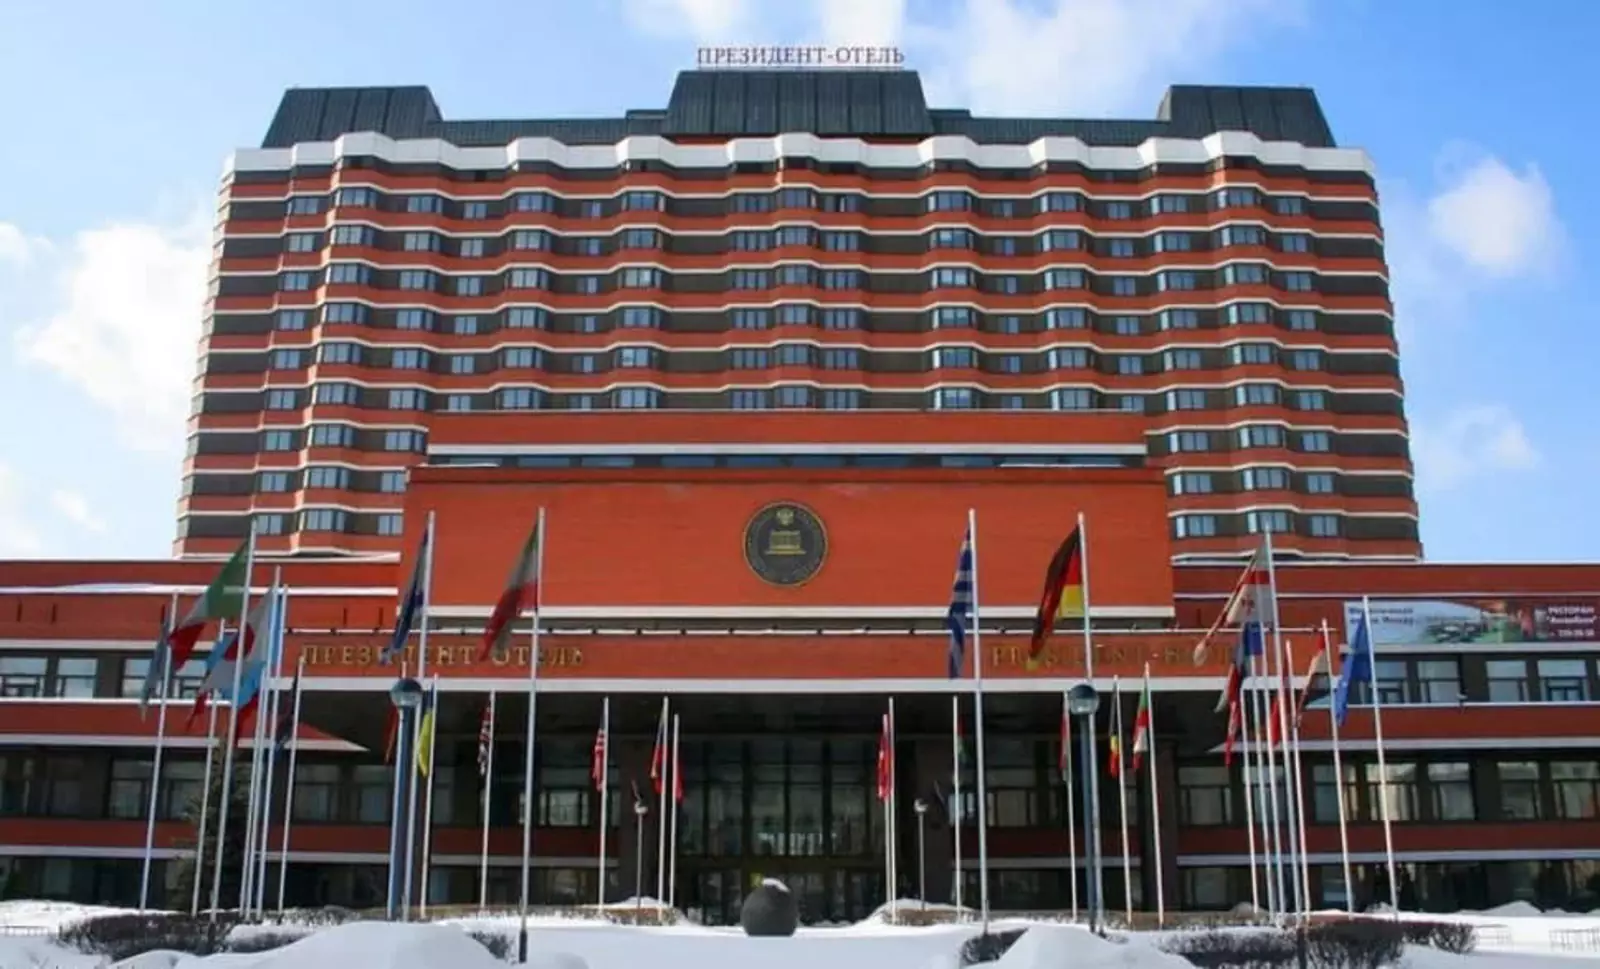 Մոսկվայի «Պրեզիդենտ» հյուրանոցում վերելակի ընկնելու հետևանքով ՀՀ քաղաքացիներ են մահացել